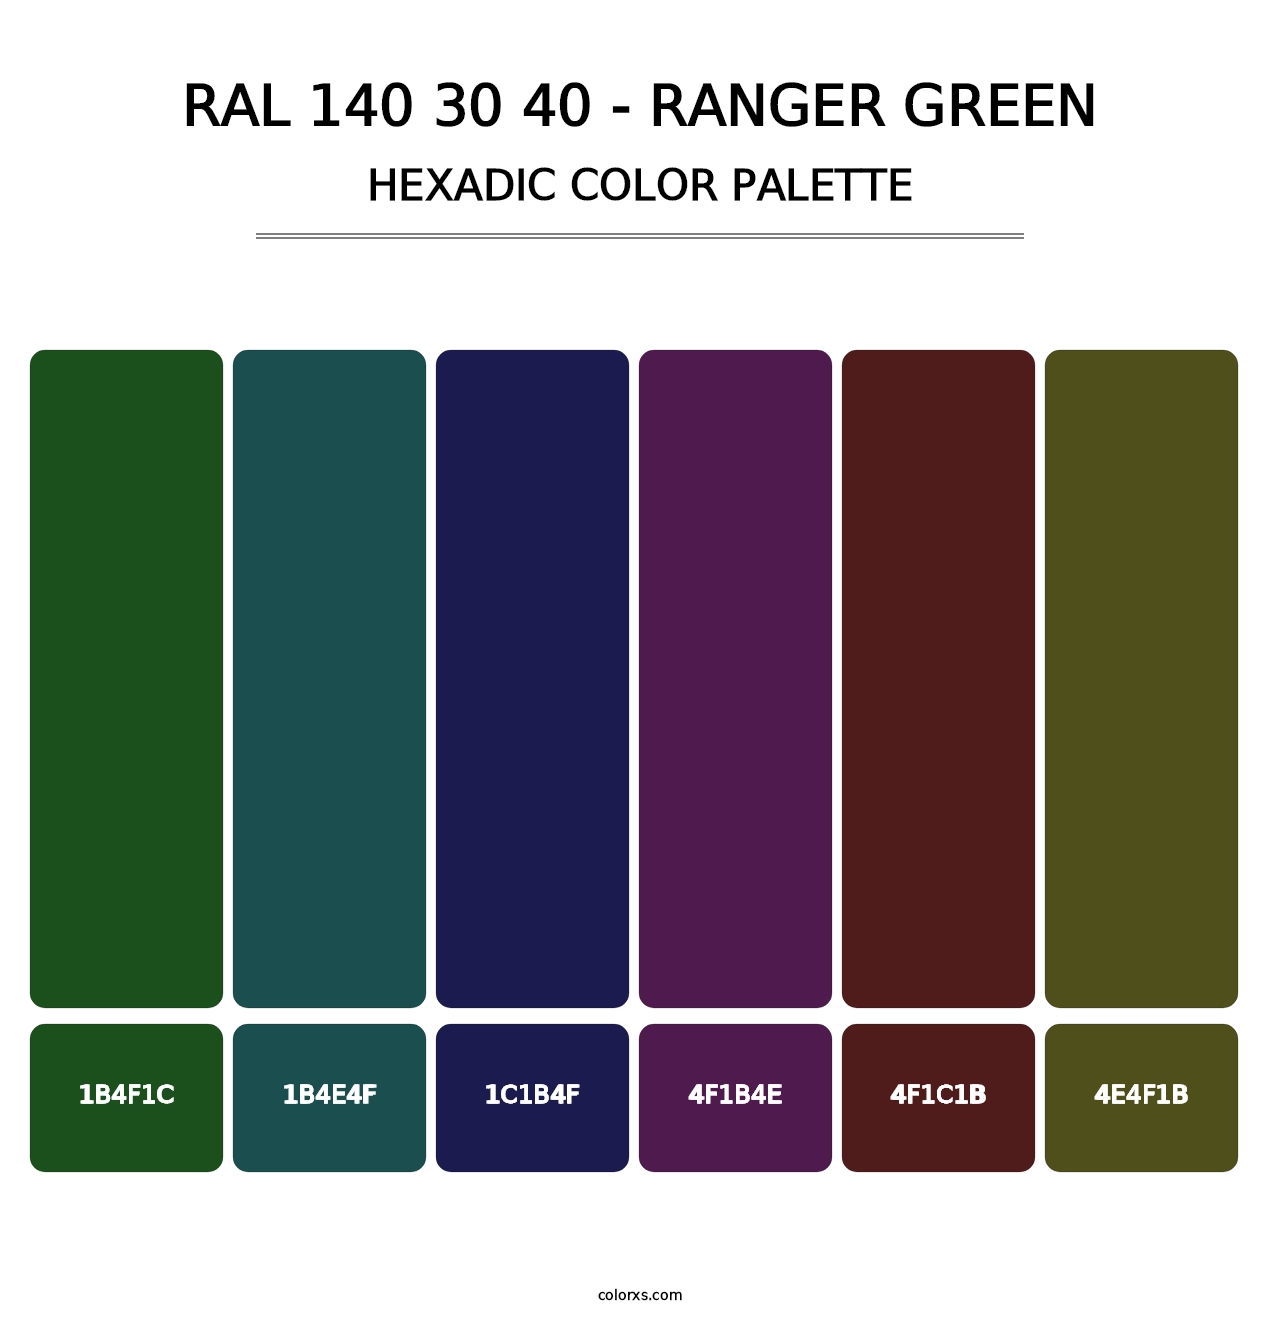 RAL 140 30 40 - Ranger Green - Hexadic Color Palette